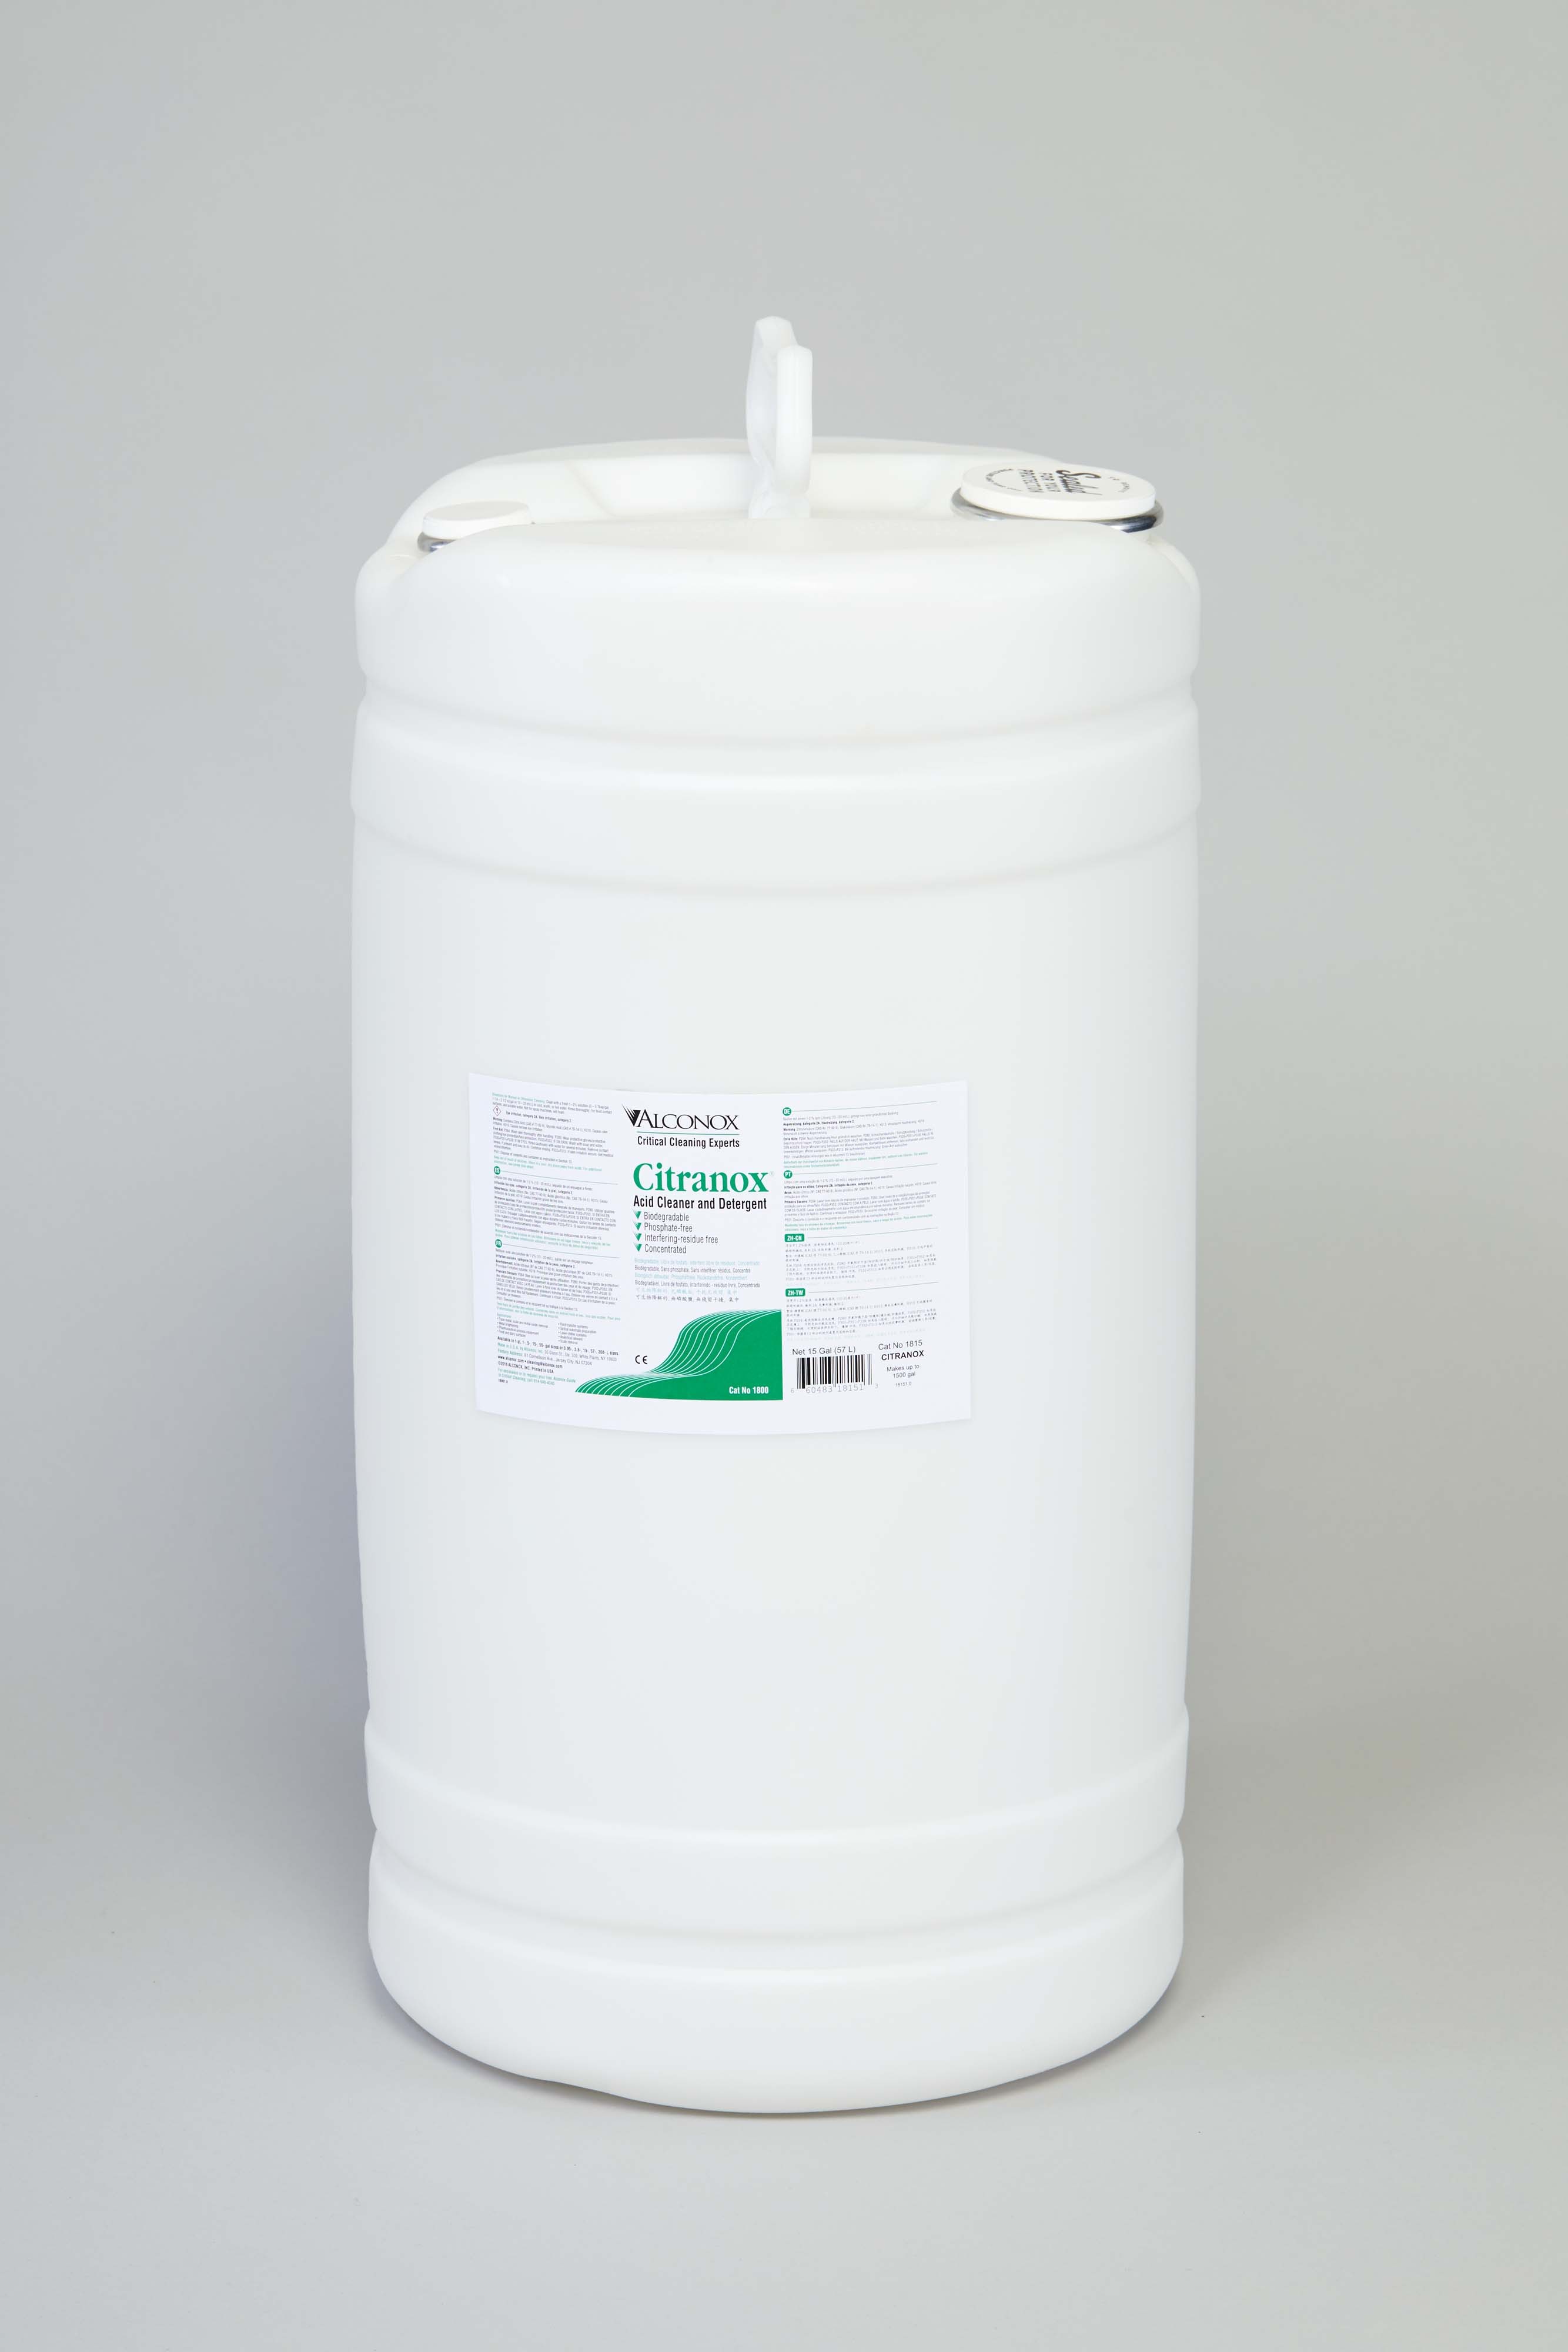 Citranox Liquid Acid Cleaner and Detergent - 15 gal.